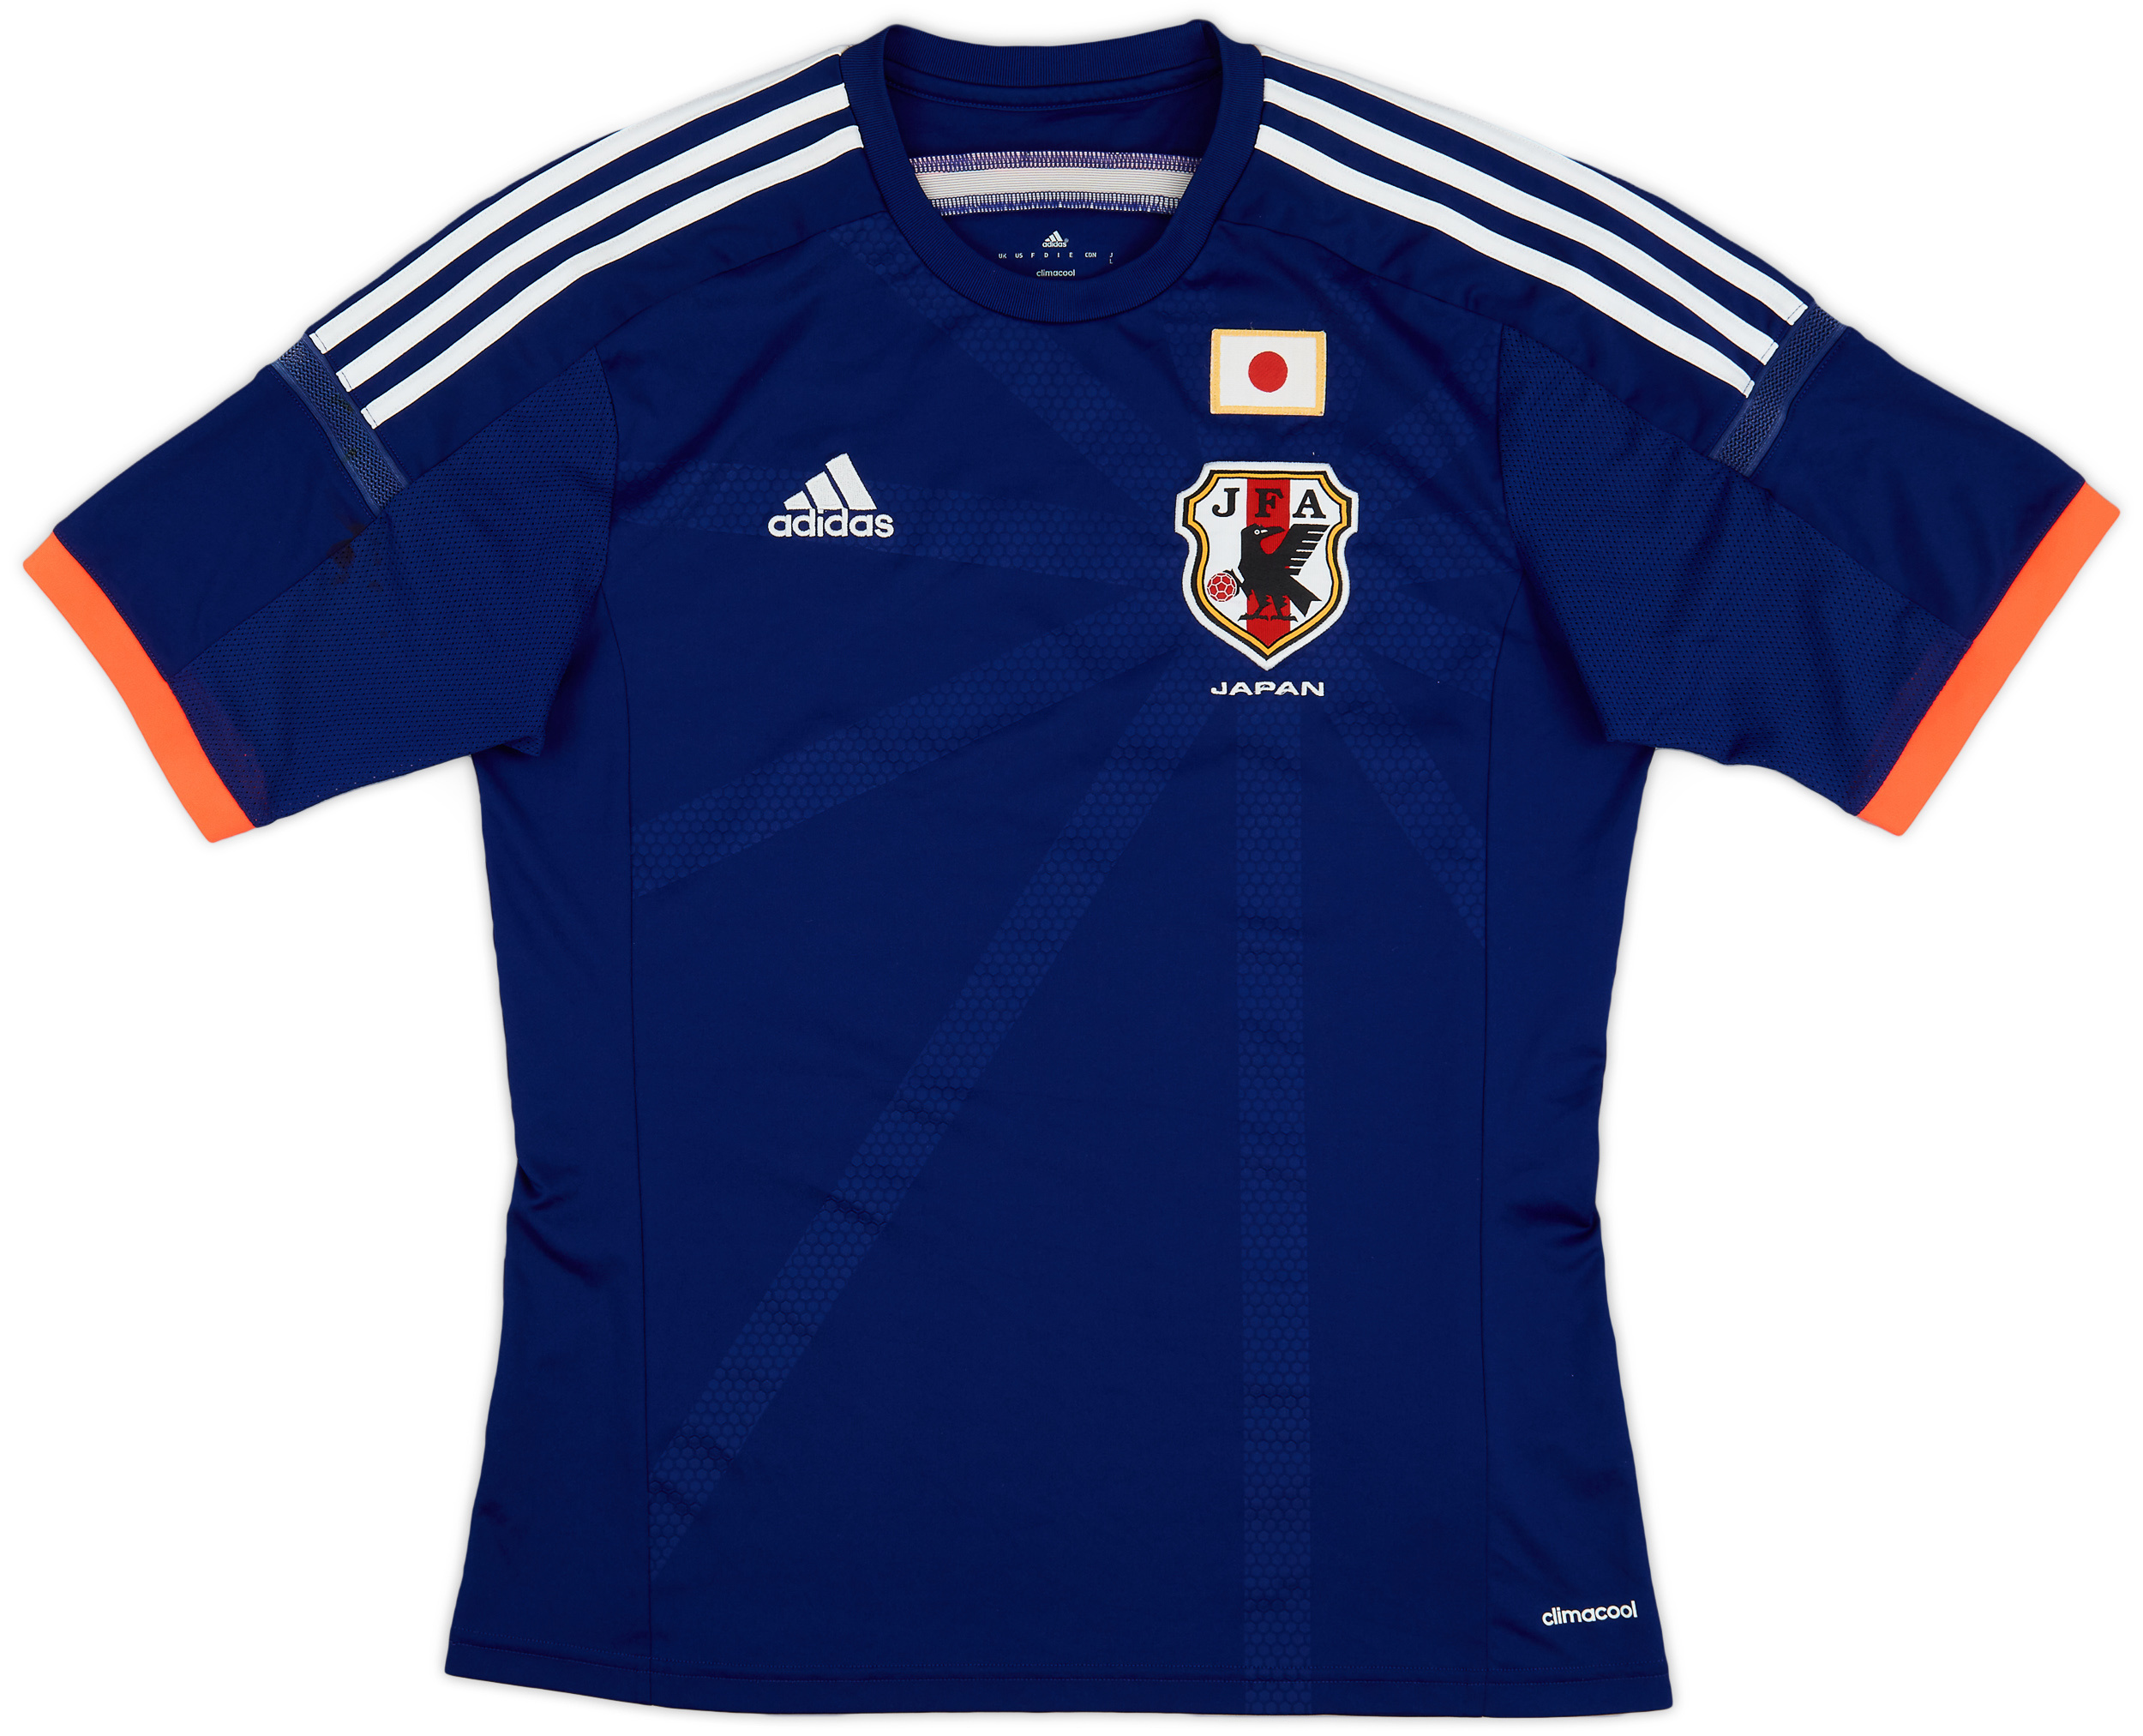 Retro Japan Shirt